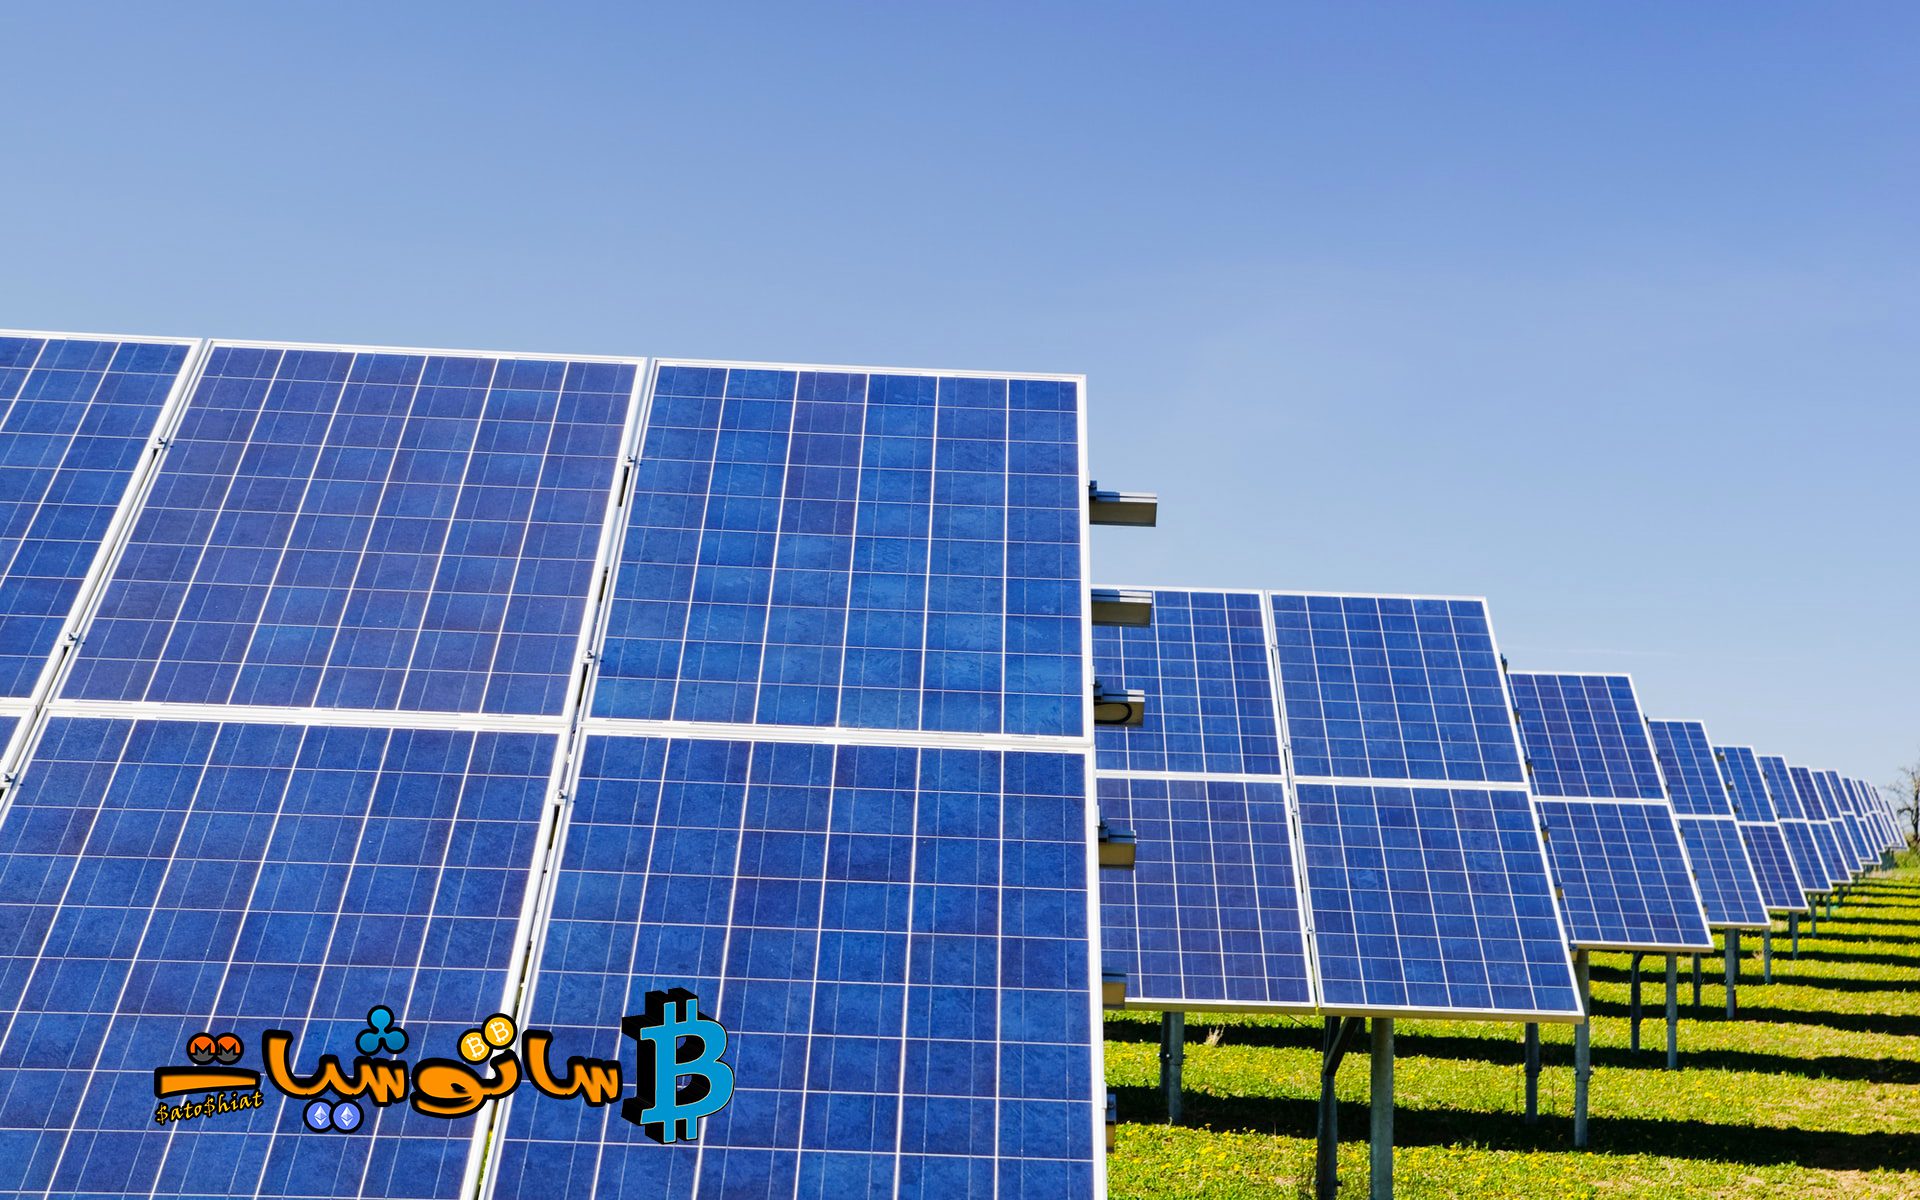 مشاريع الطاقة الشمسية